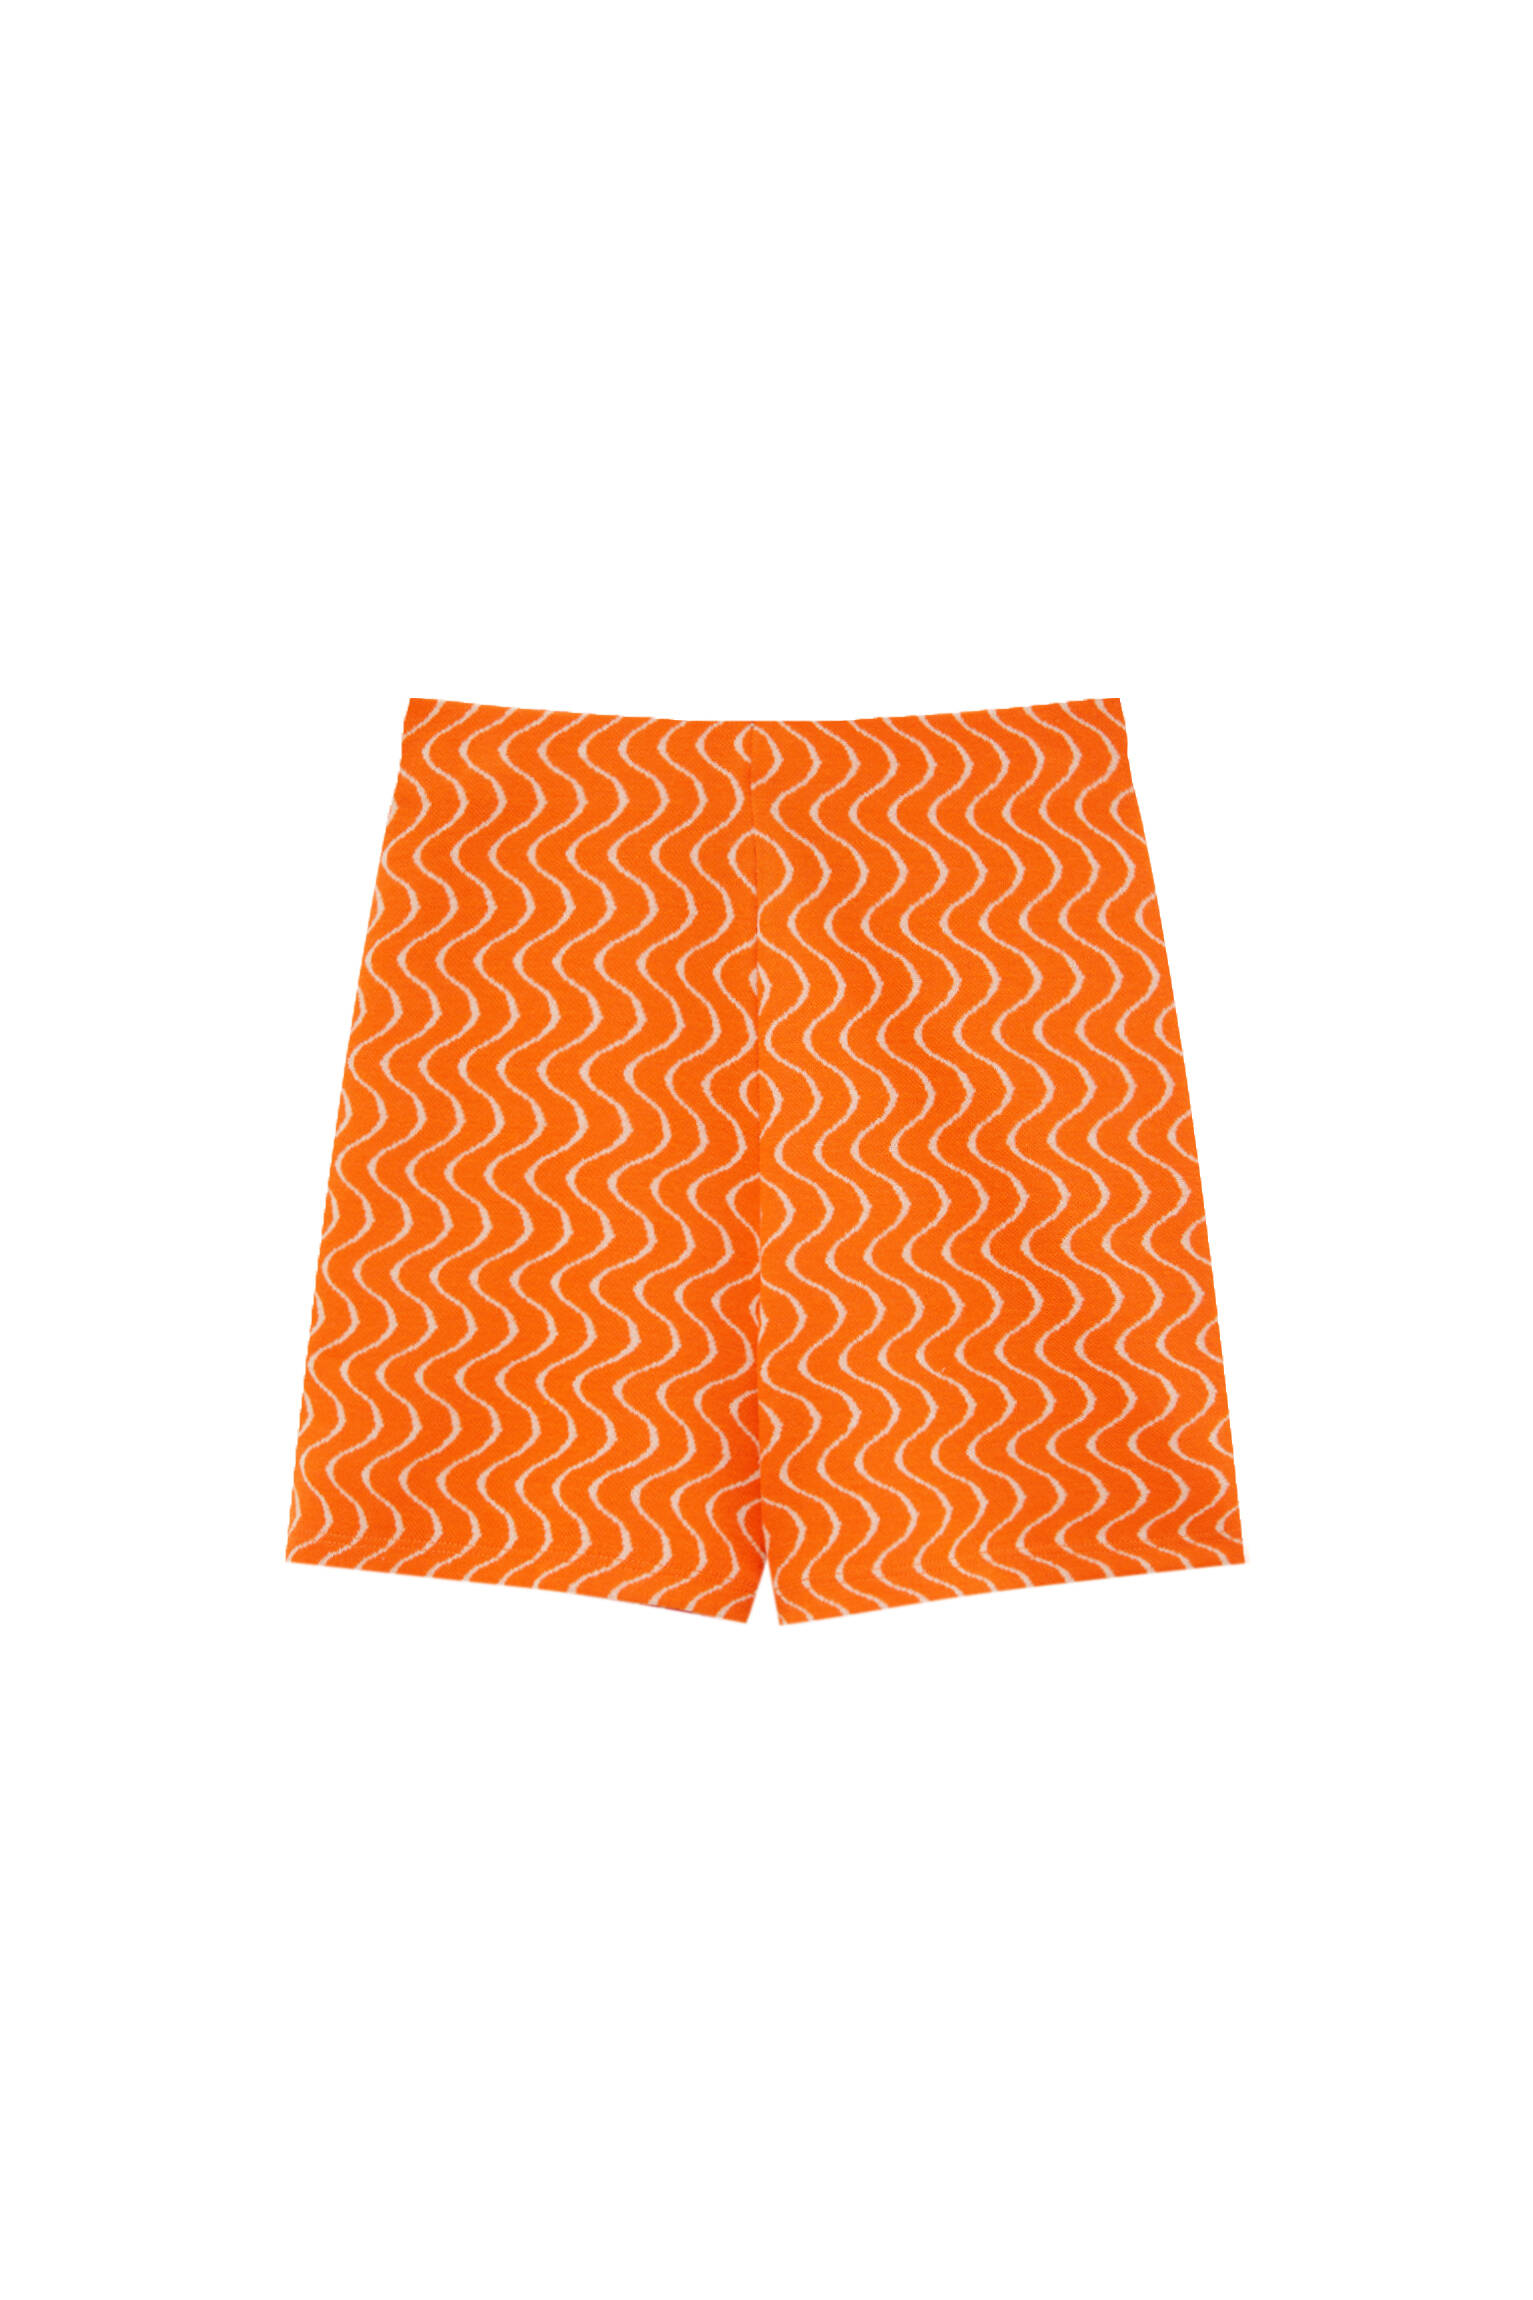 Pull&bear Femme Short Orange Légèrement Extensible à Imprimé Ondulations All Over. Orange M